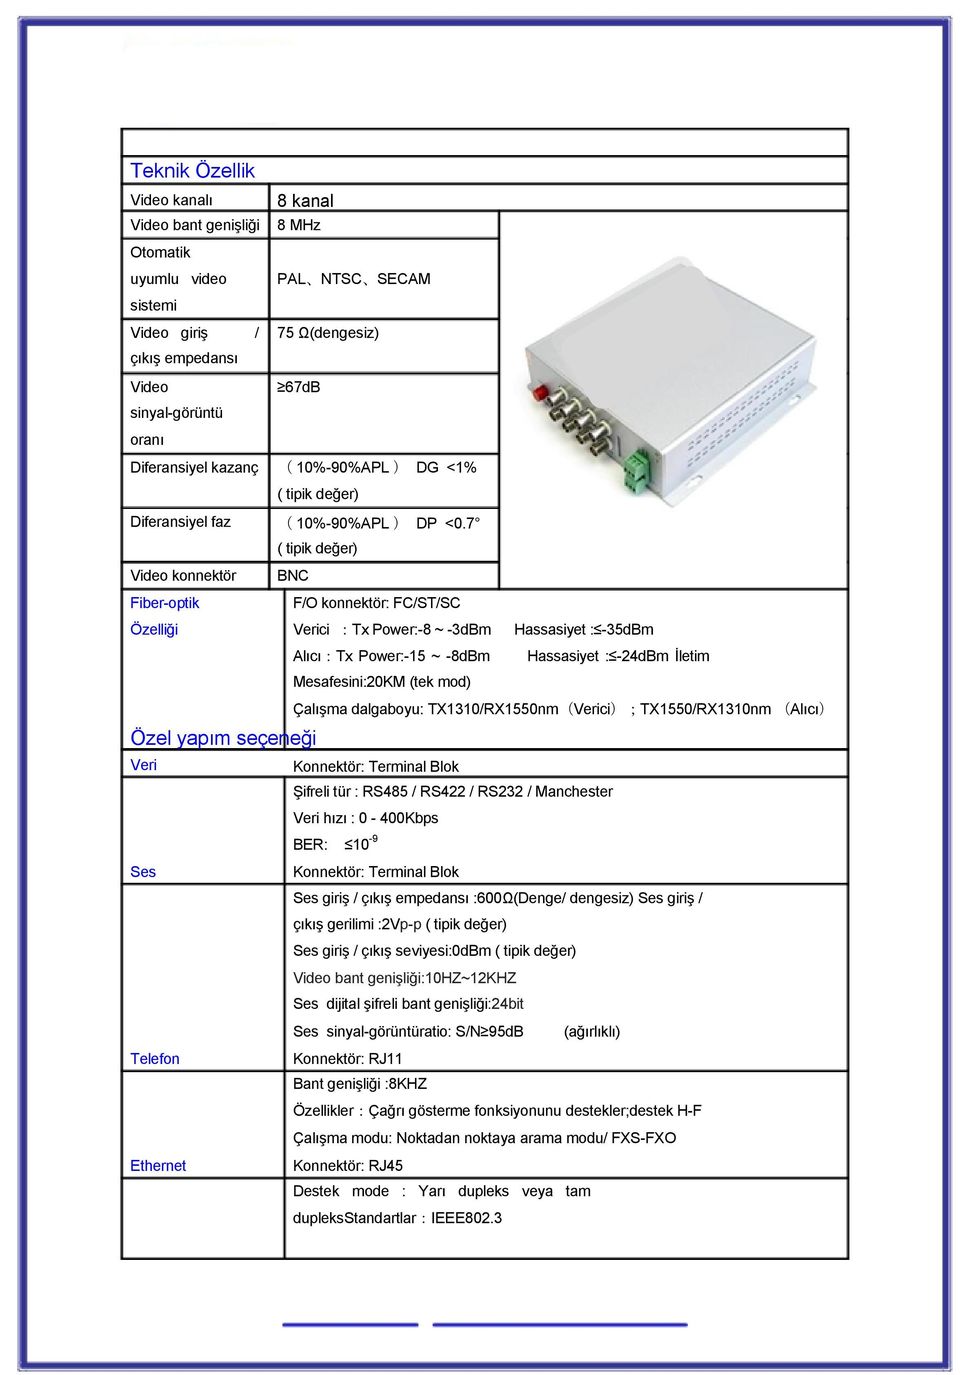 7 ( tipik değer) Video konnektör BNC Fiber-optik F/O konnektör: FC/ST/SC Özelliği Verici :Tx Power:-8 ~ -3dBm Hassasiyet : -35dBm Alıcı:Tx Power:-15 ~ -8dBm Hassasiyet : -24dBm İletim Mesafesini:20KM